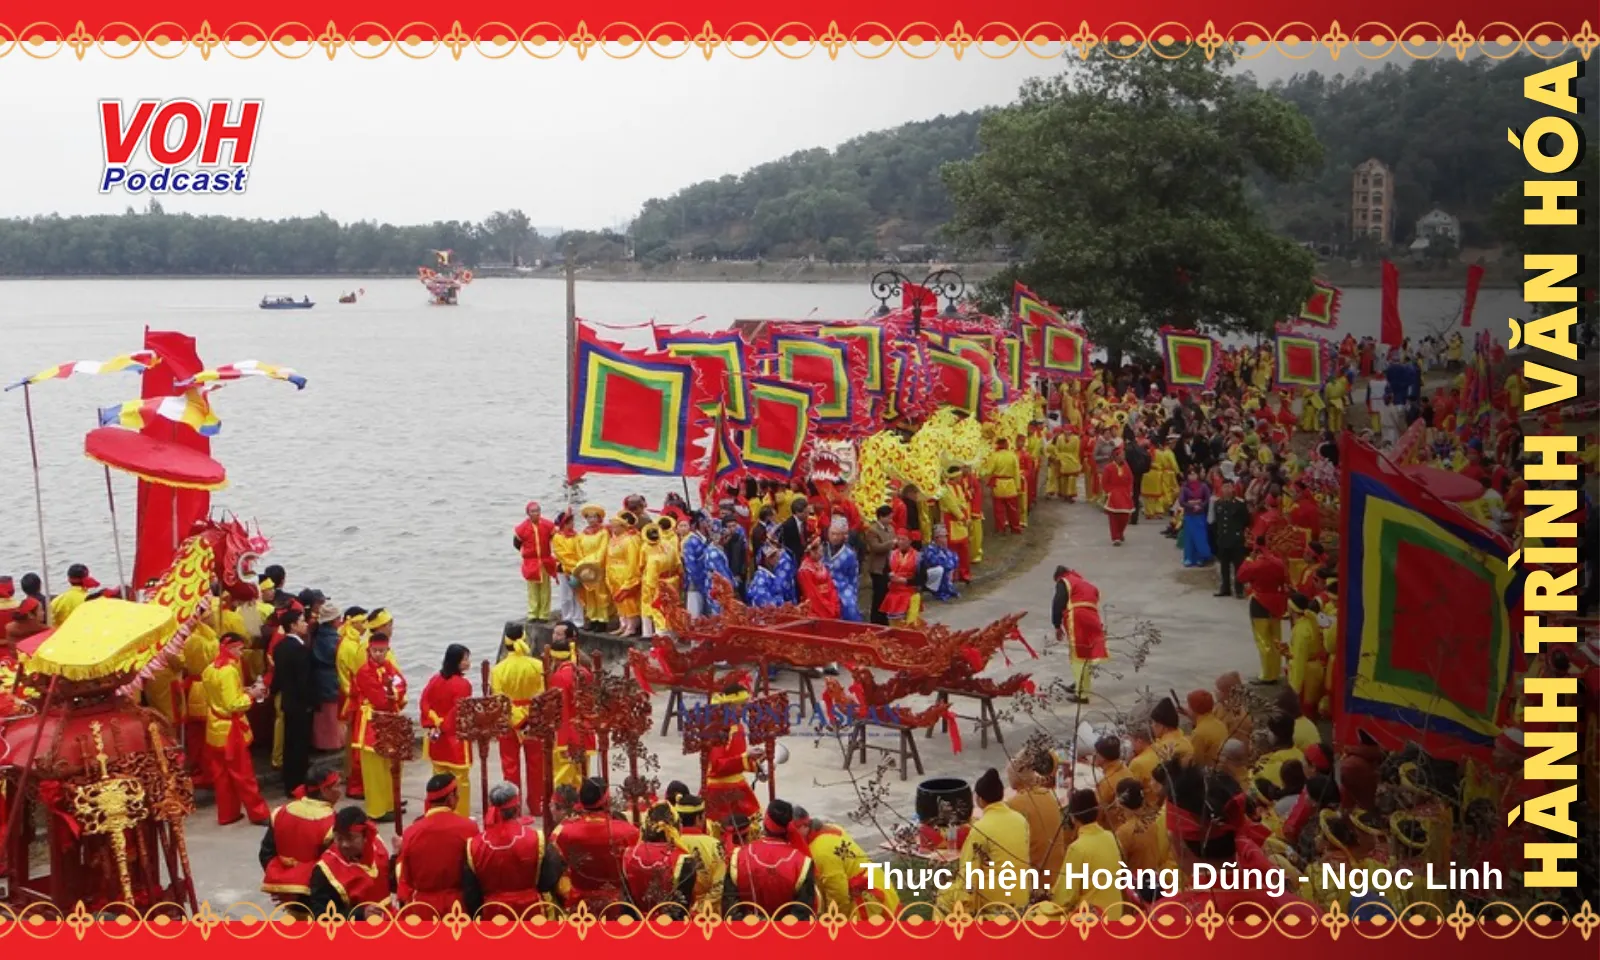 Lễ hội truyền thống mùa Xuân Côn Sơn - Kiếp Bạc: Hành trình linh thiêng và bản sắc văn hóa